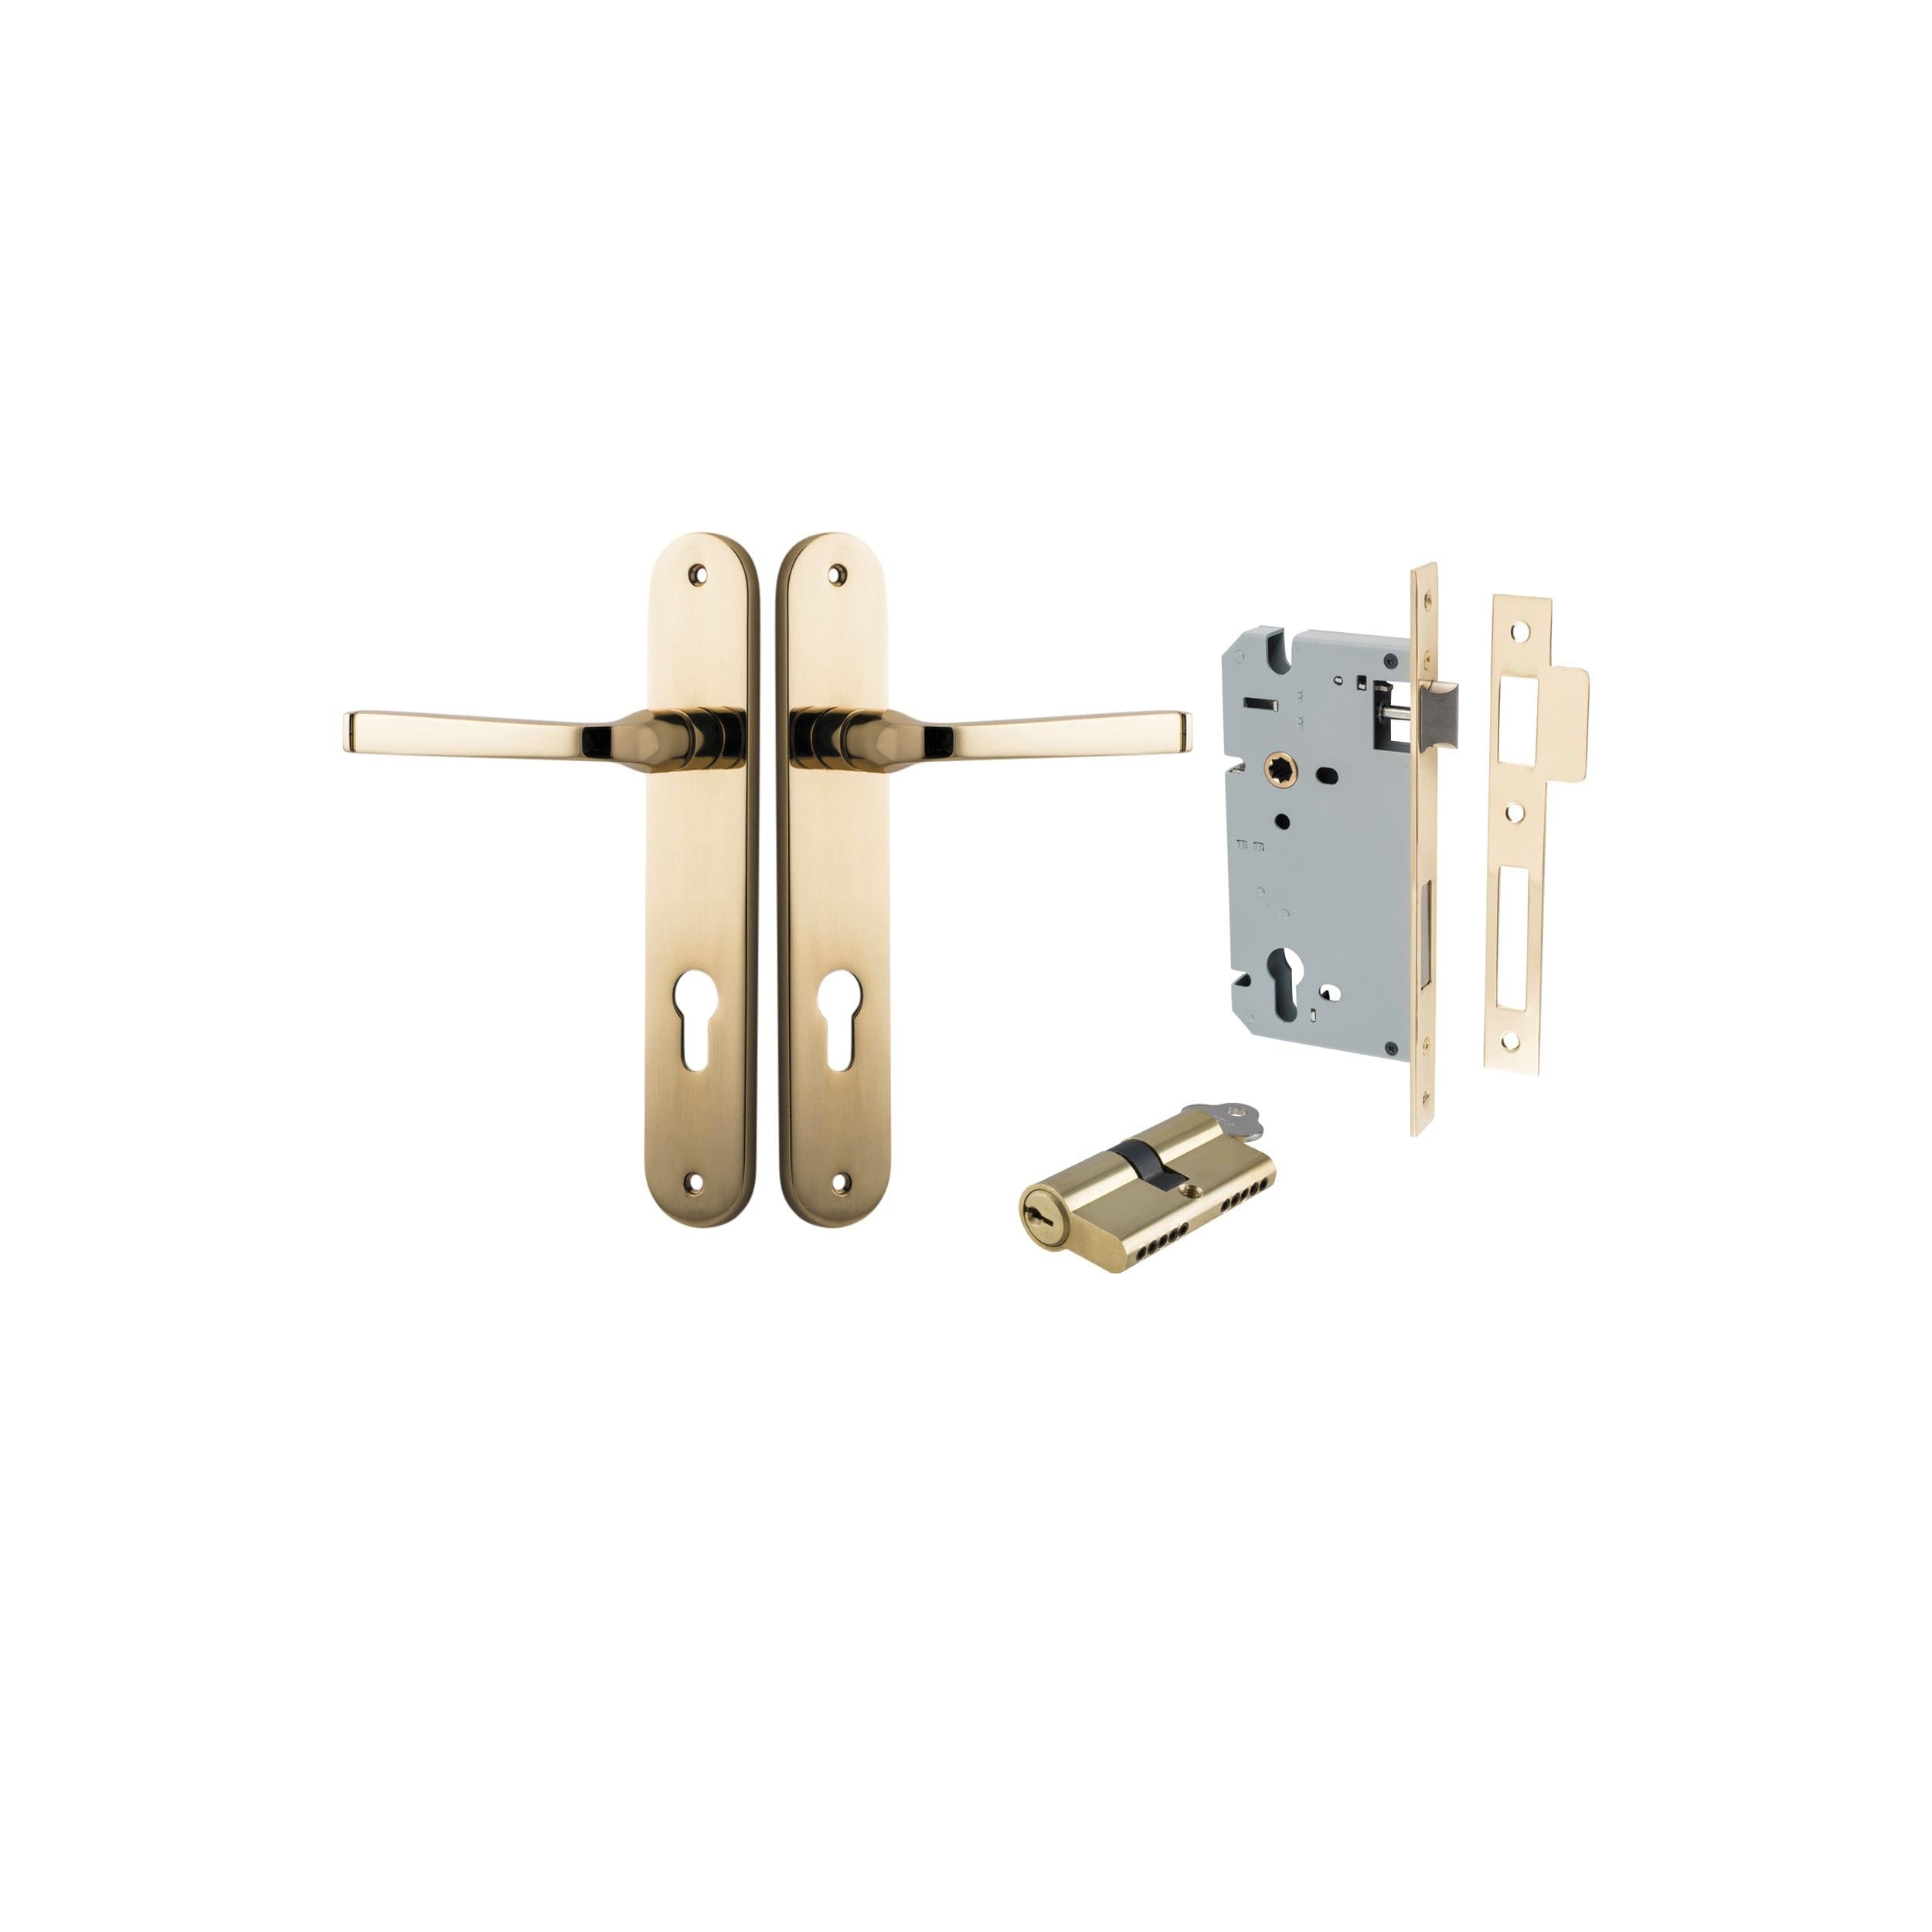 Annecy Lever Oval Polished Brass Entrance Kit - Key/Key